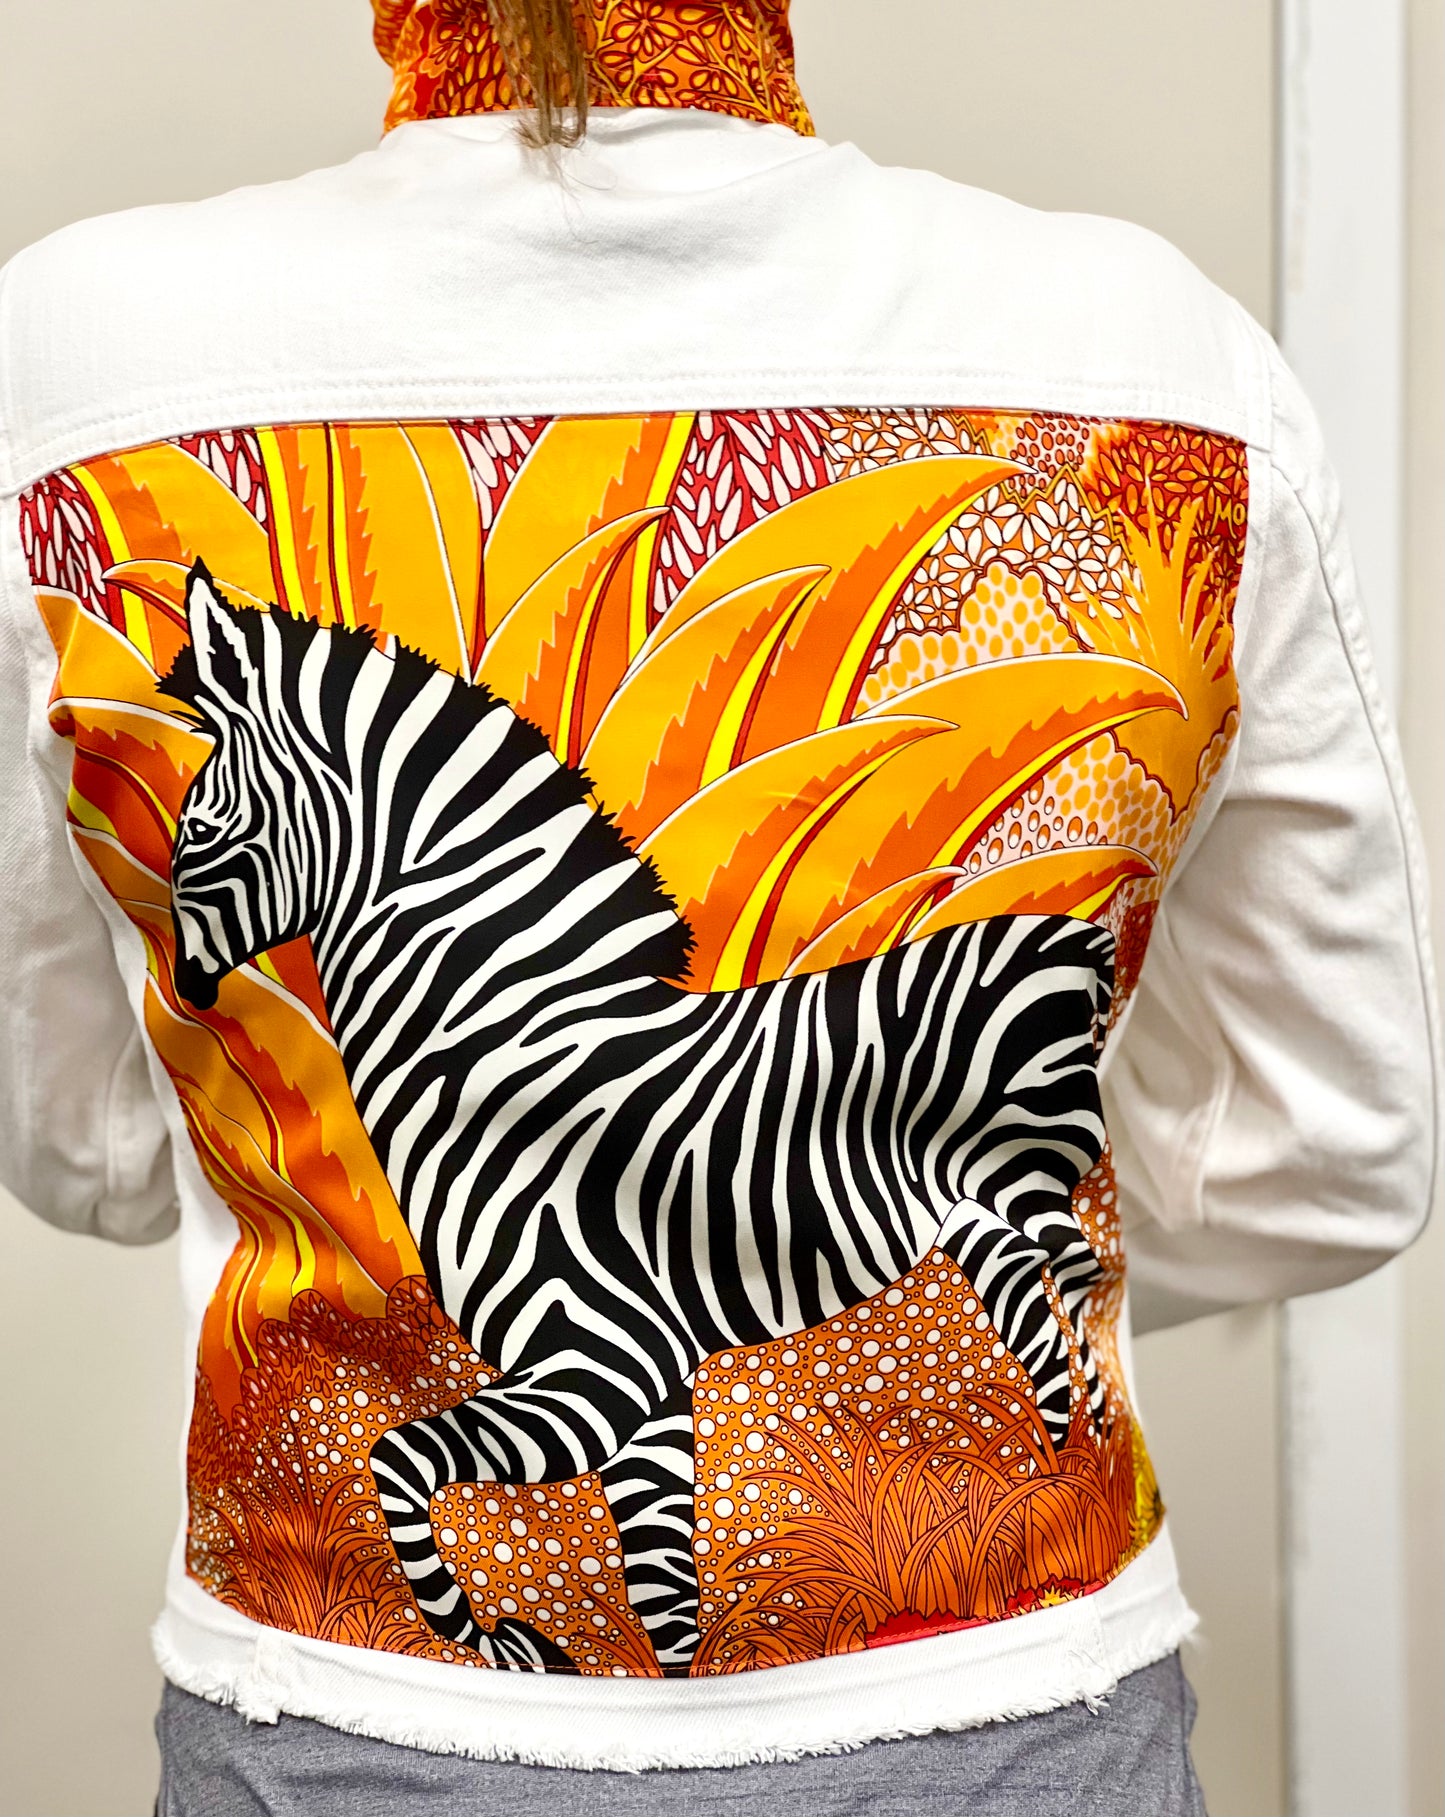 The White Denim Jacket / Love a Zebra / Orange